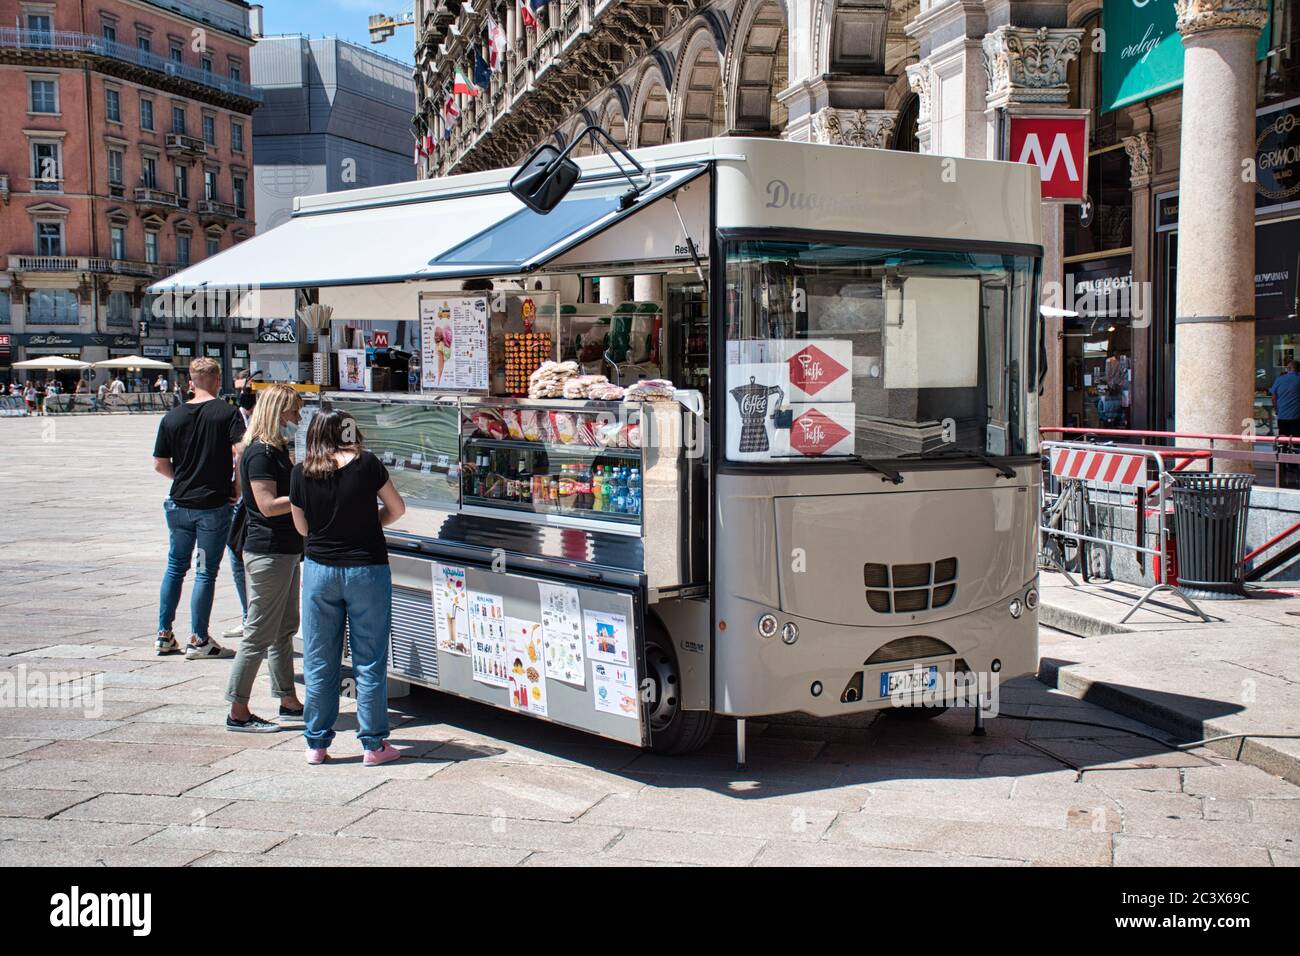 Milano, Italia 06.20.2020: Foodtruck in Piazza Duomo che vende cibo e bevande Foto Stock